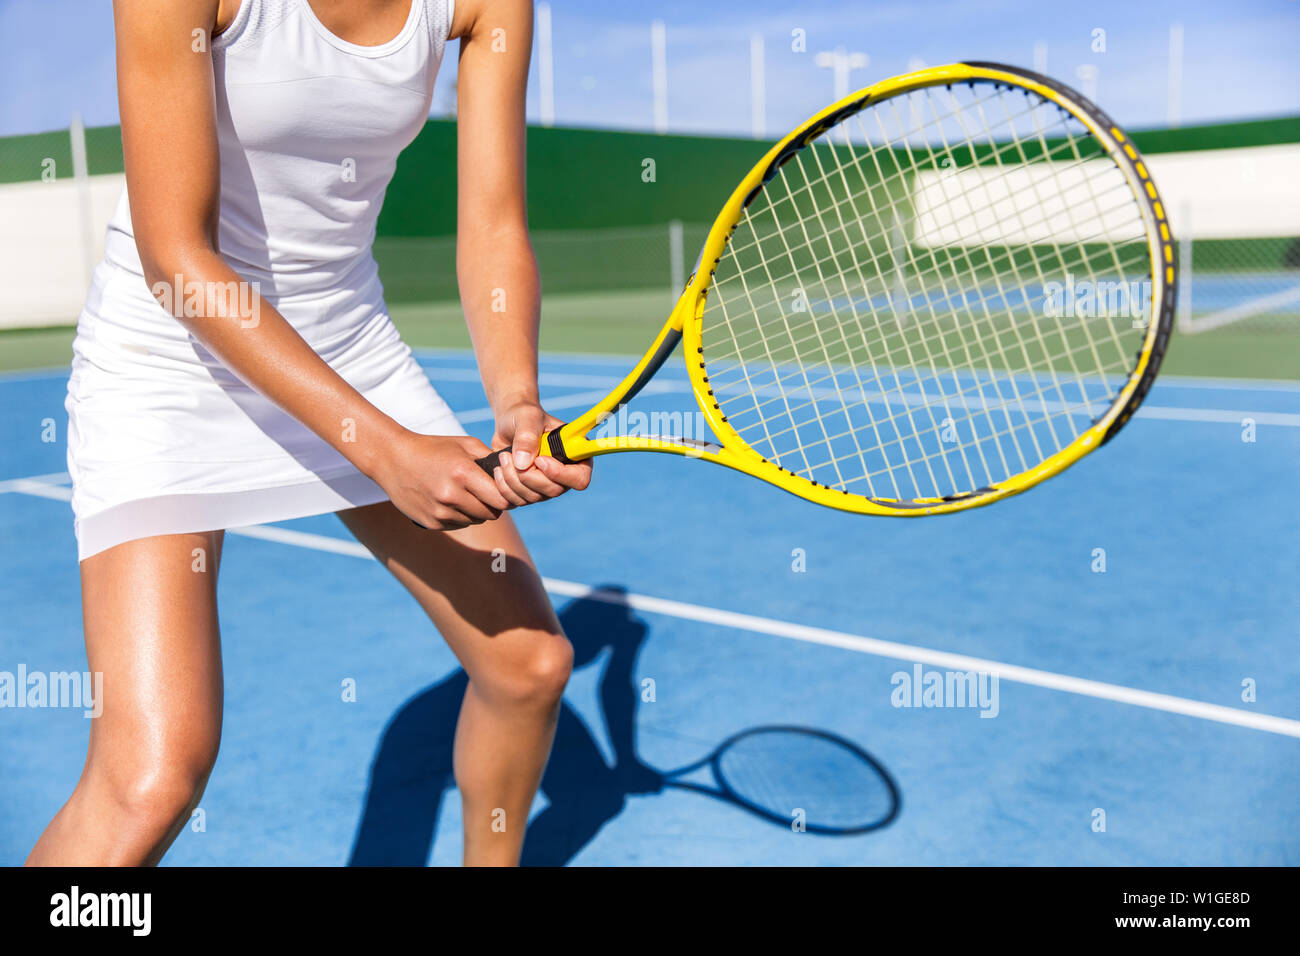 Mittelteil der Tennisspieler Frau bereit, die Spiel auf blauen Hartplatz im Freien in Position halten Schläger tragen weiße Kleid Rock. Weibliche Athleten sportliche Mädchen für Sommer sports activity Kurs. Stockfoto